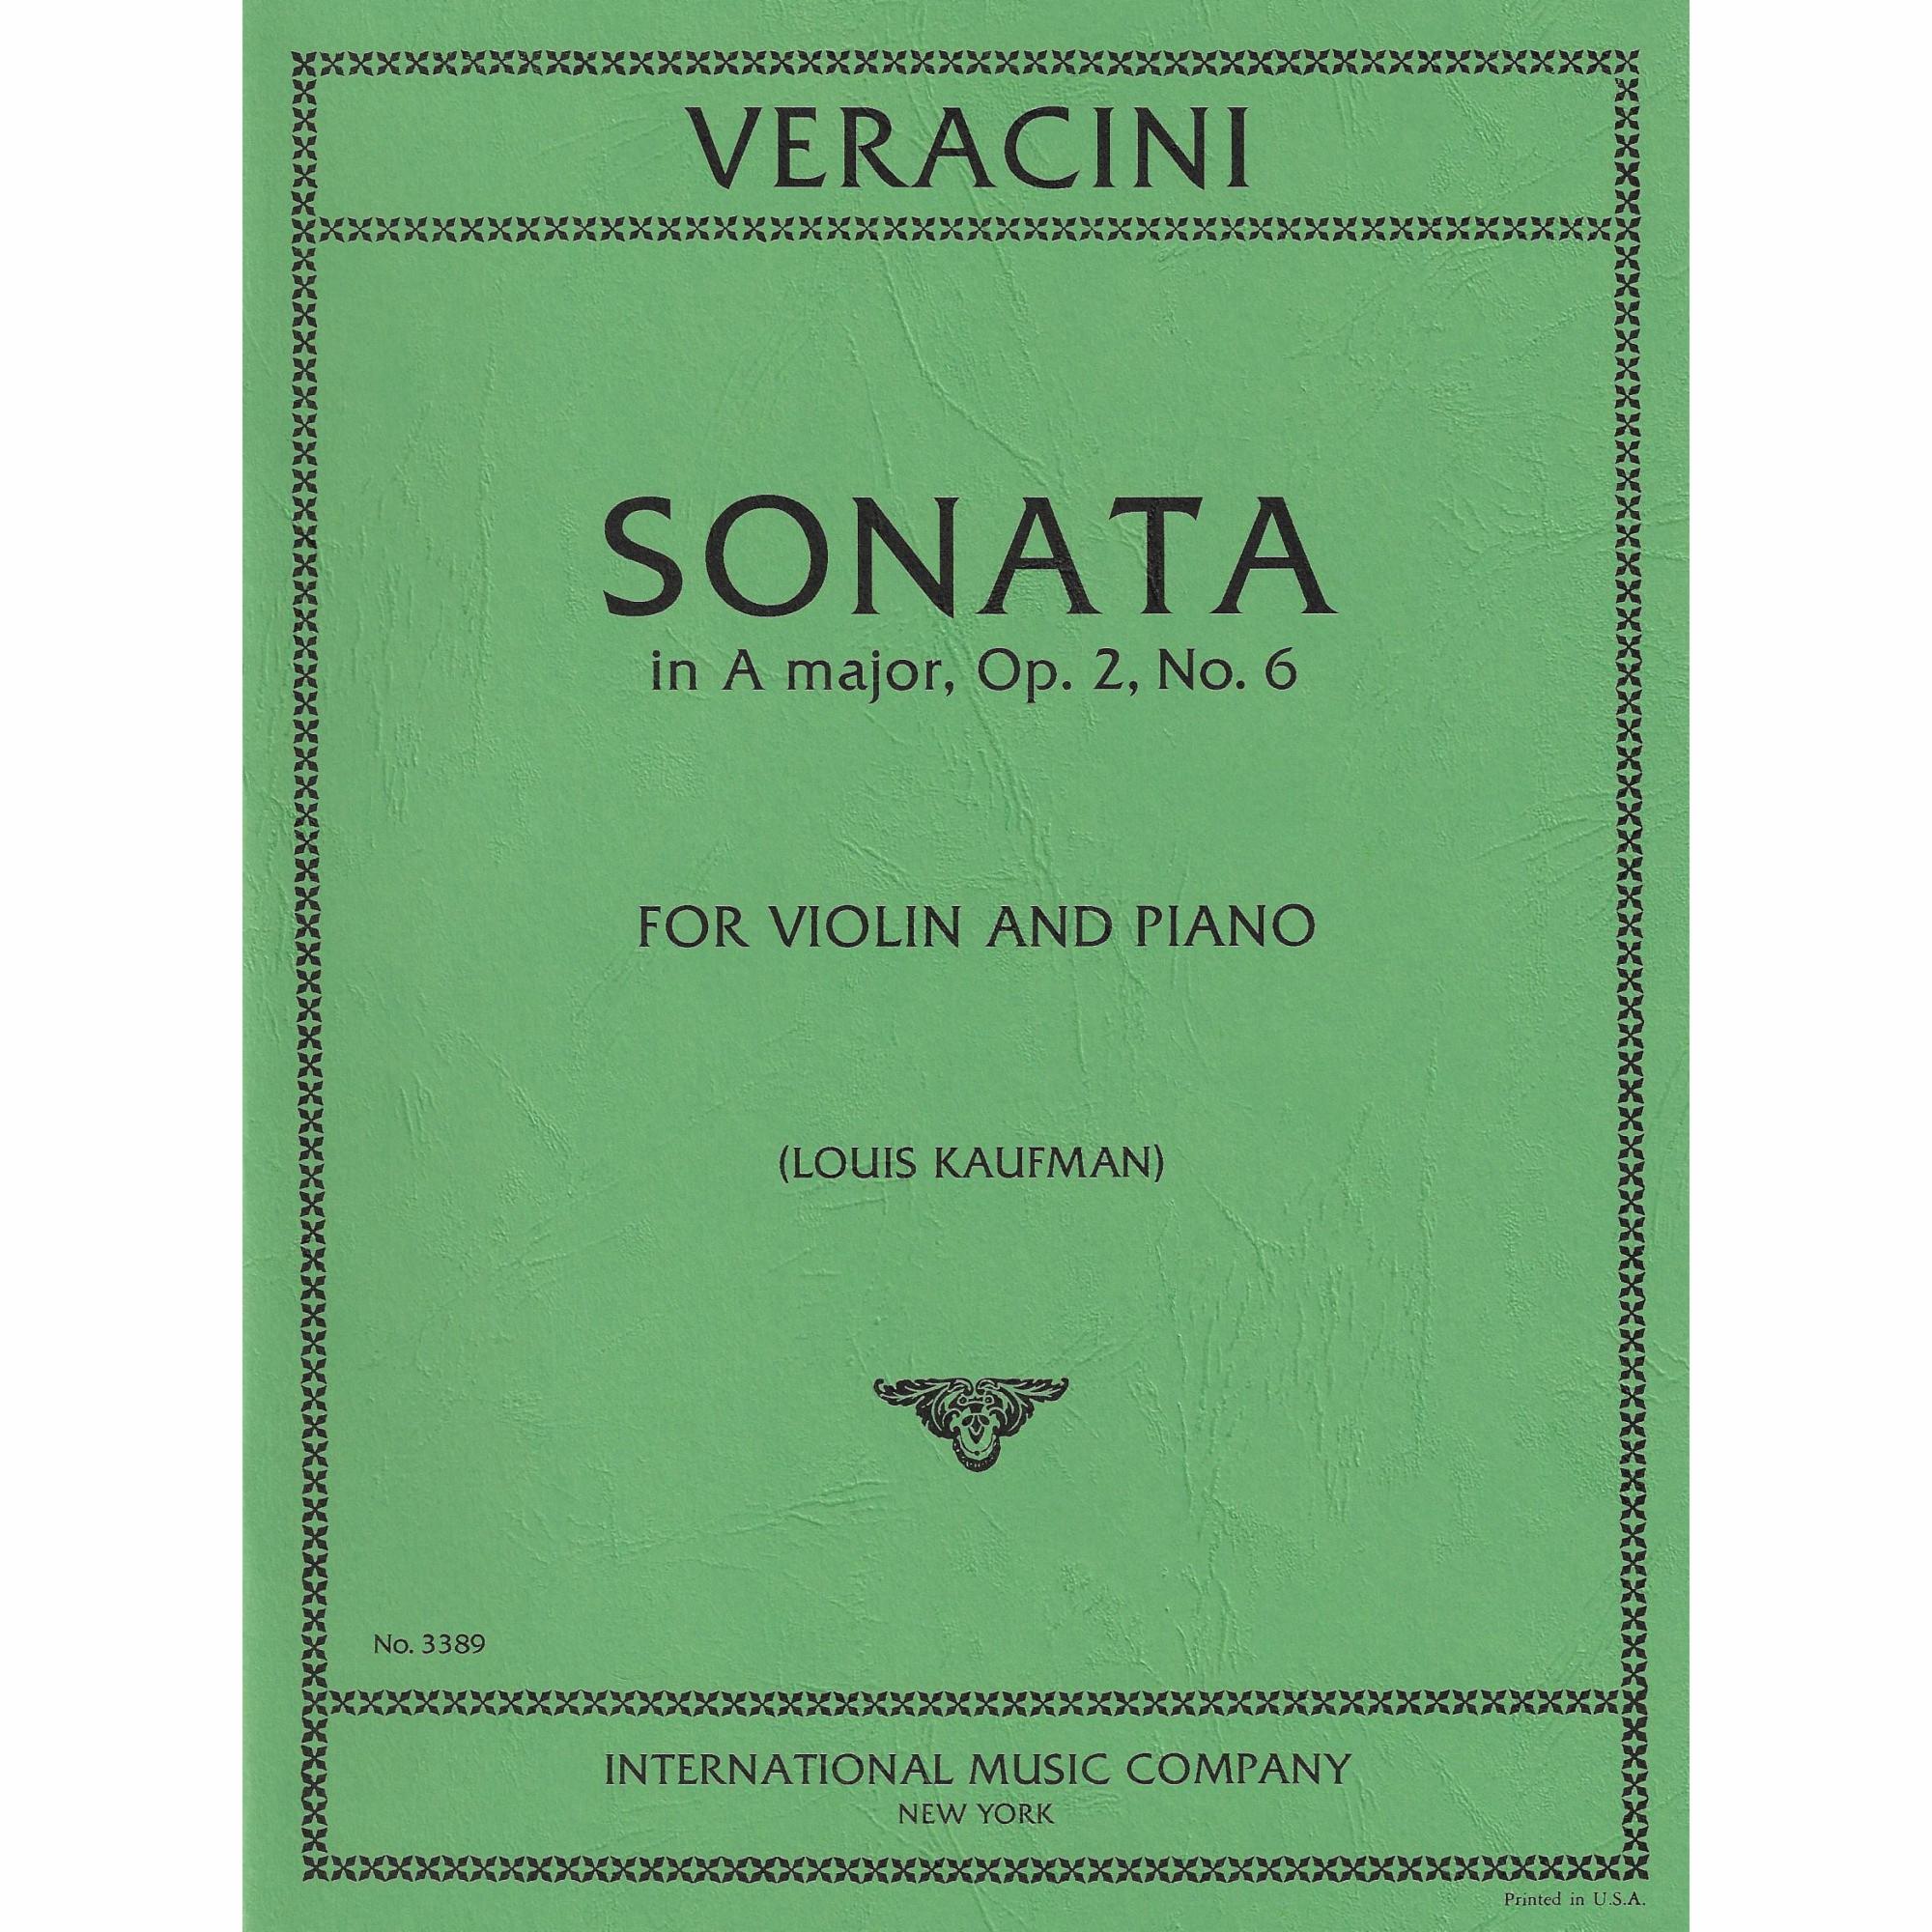 Veracini -- Sonata in A Major, Op. 2, No. 6 for Violin and Piano